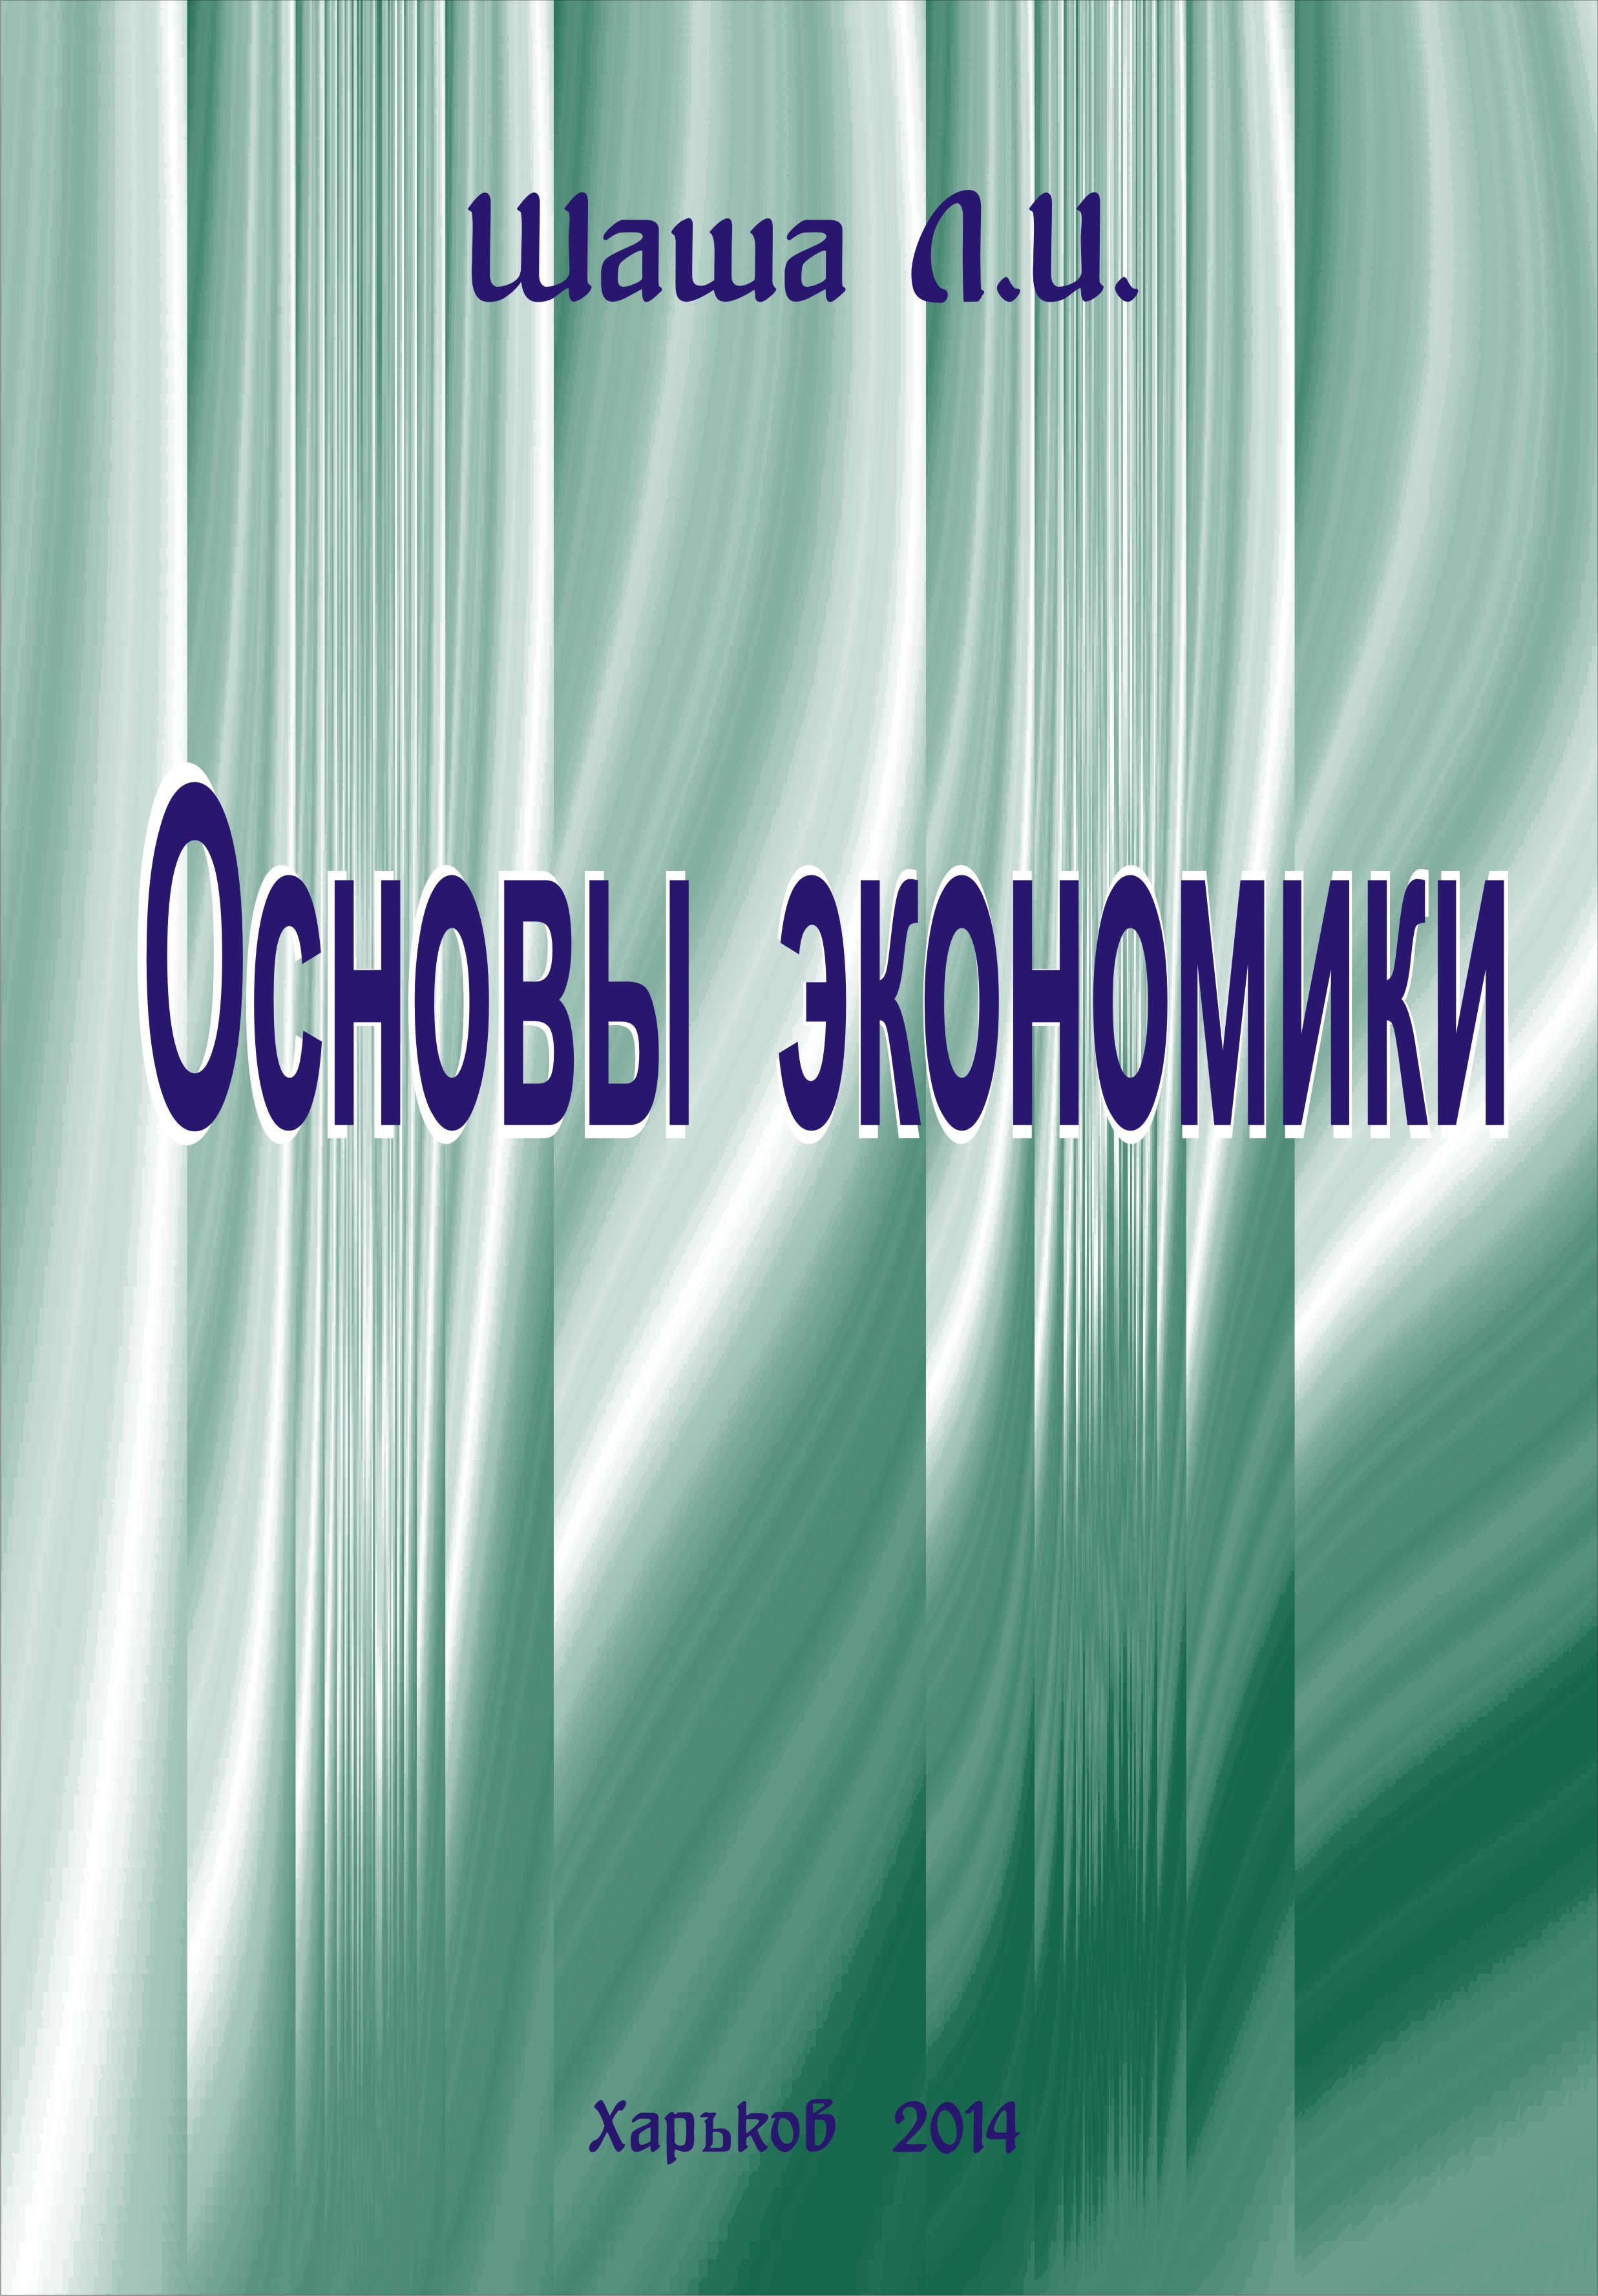 2014_osnovi_economiki_oblojka_1